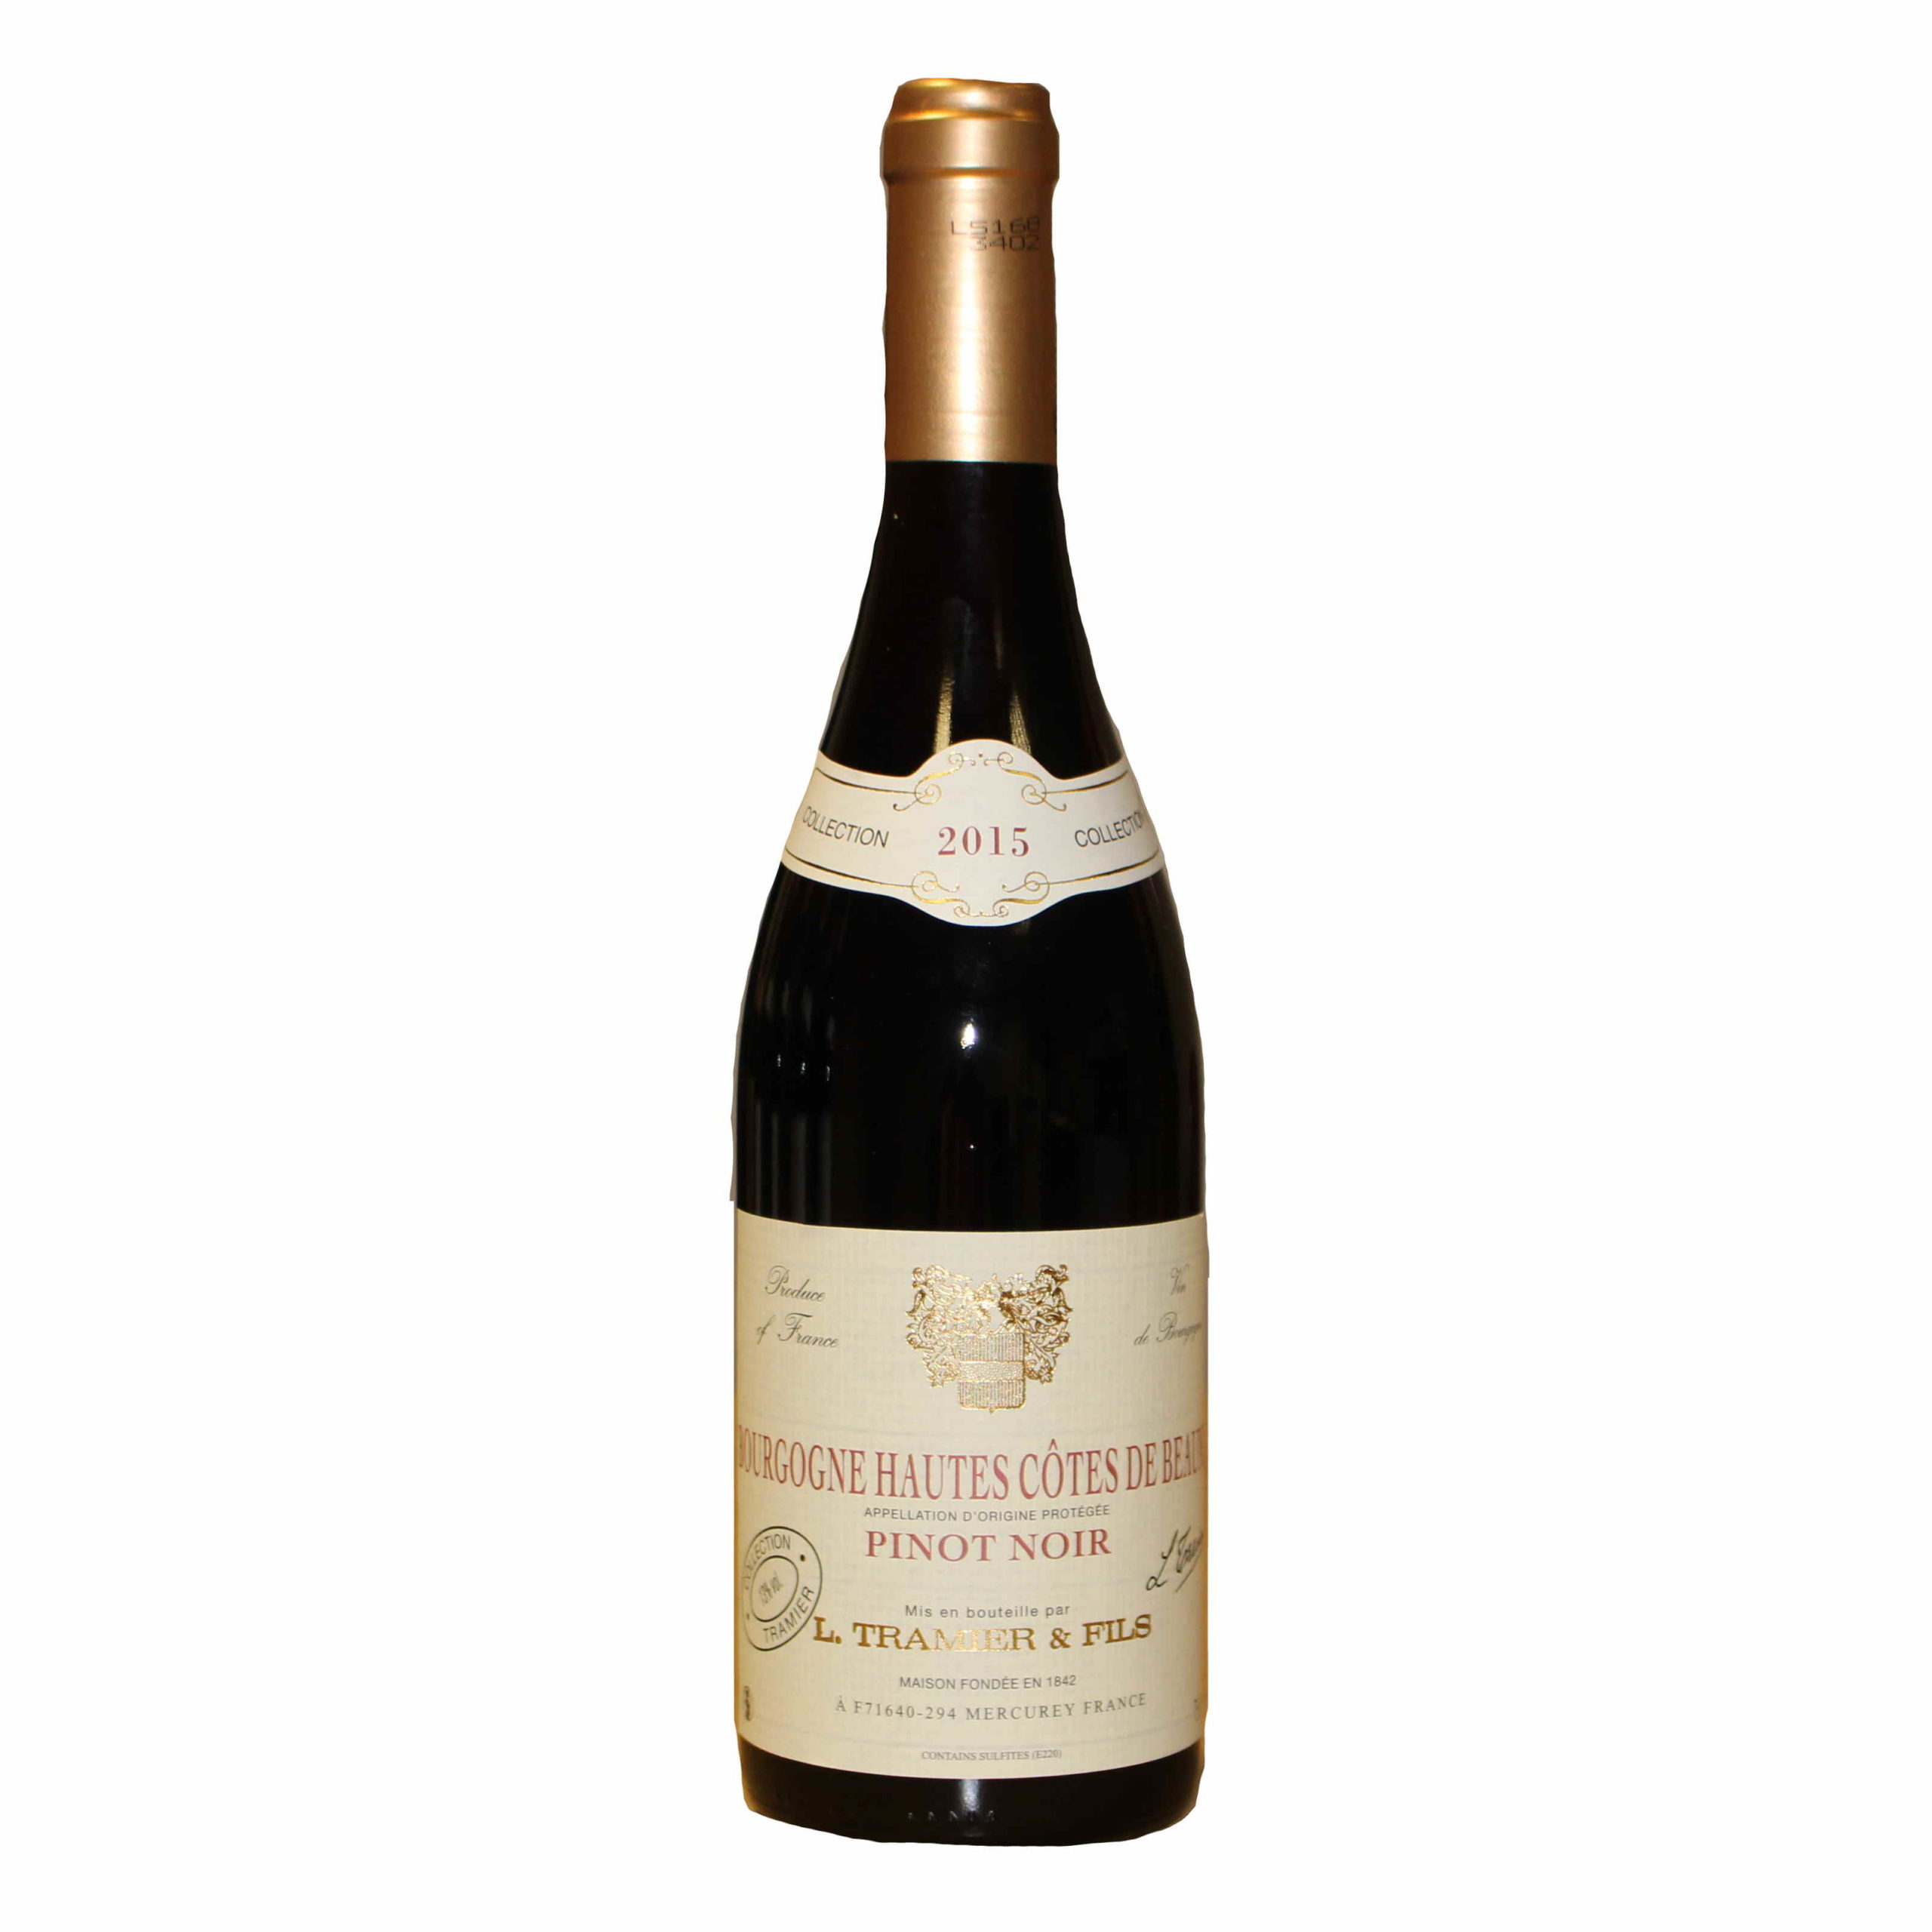 特拉米庄园上夜丘干红2015 L.TRAMIER Fils Bourgogne Hautes cotes de Nuits